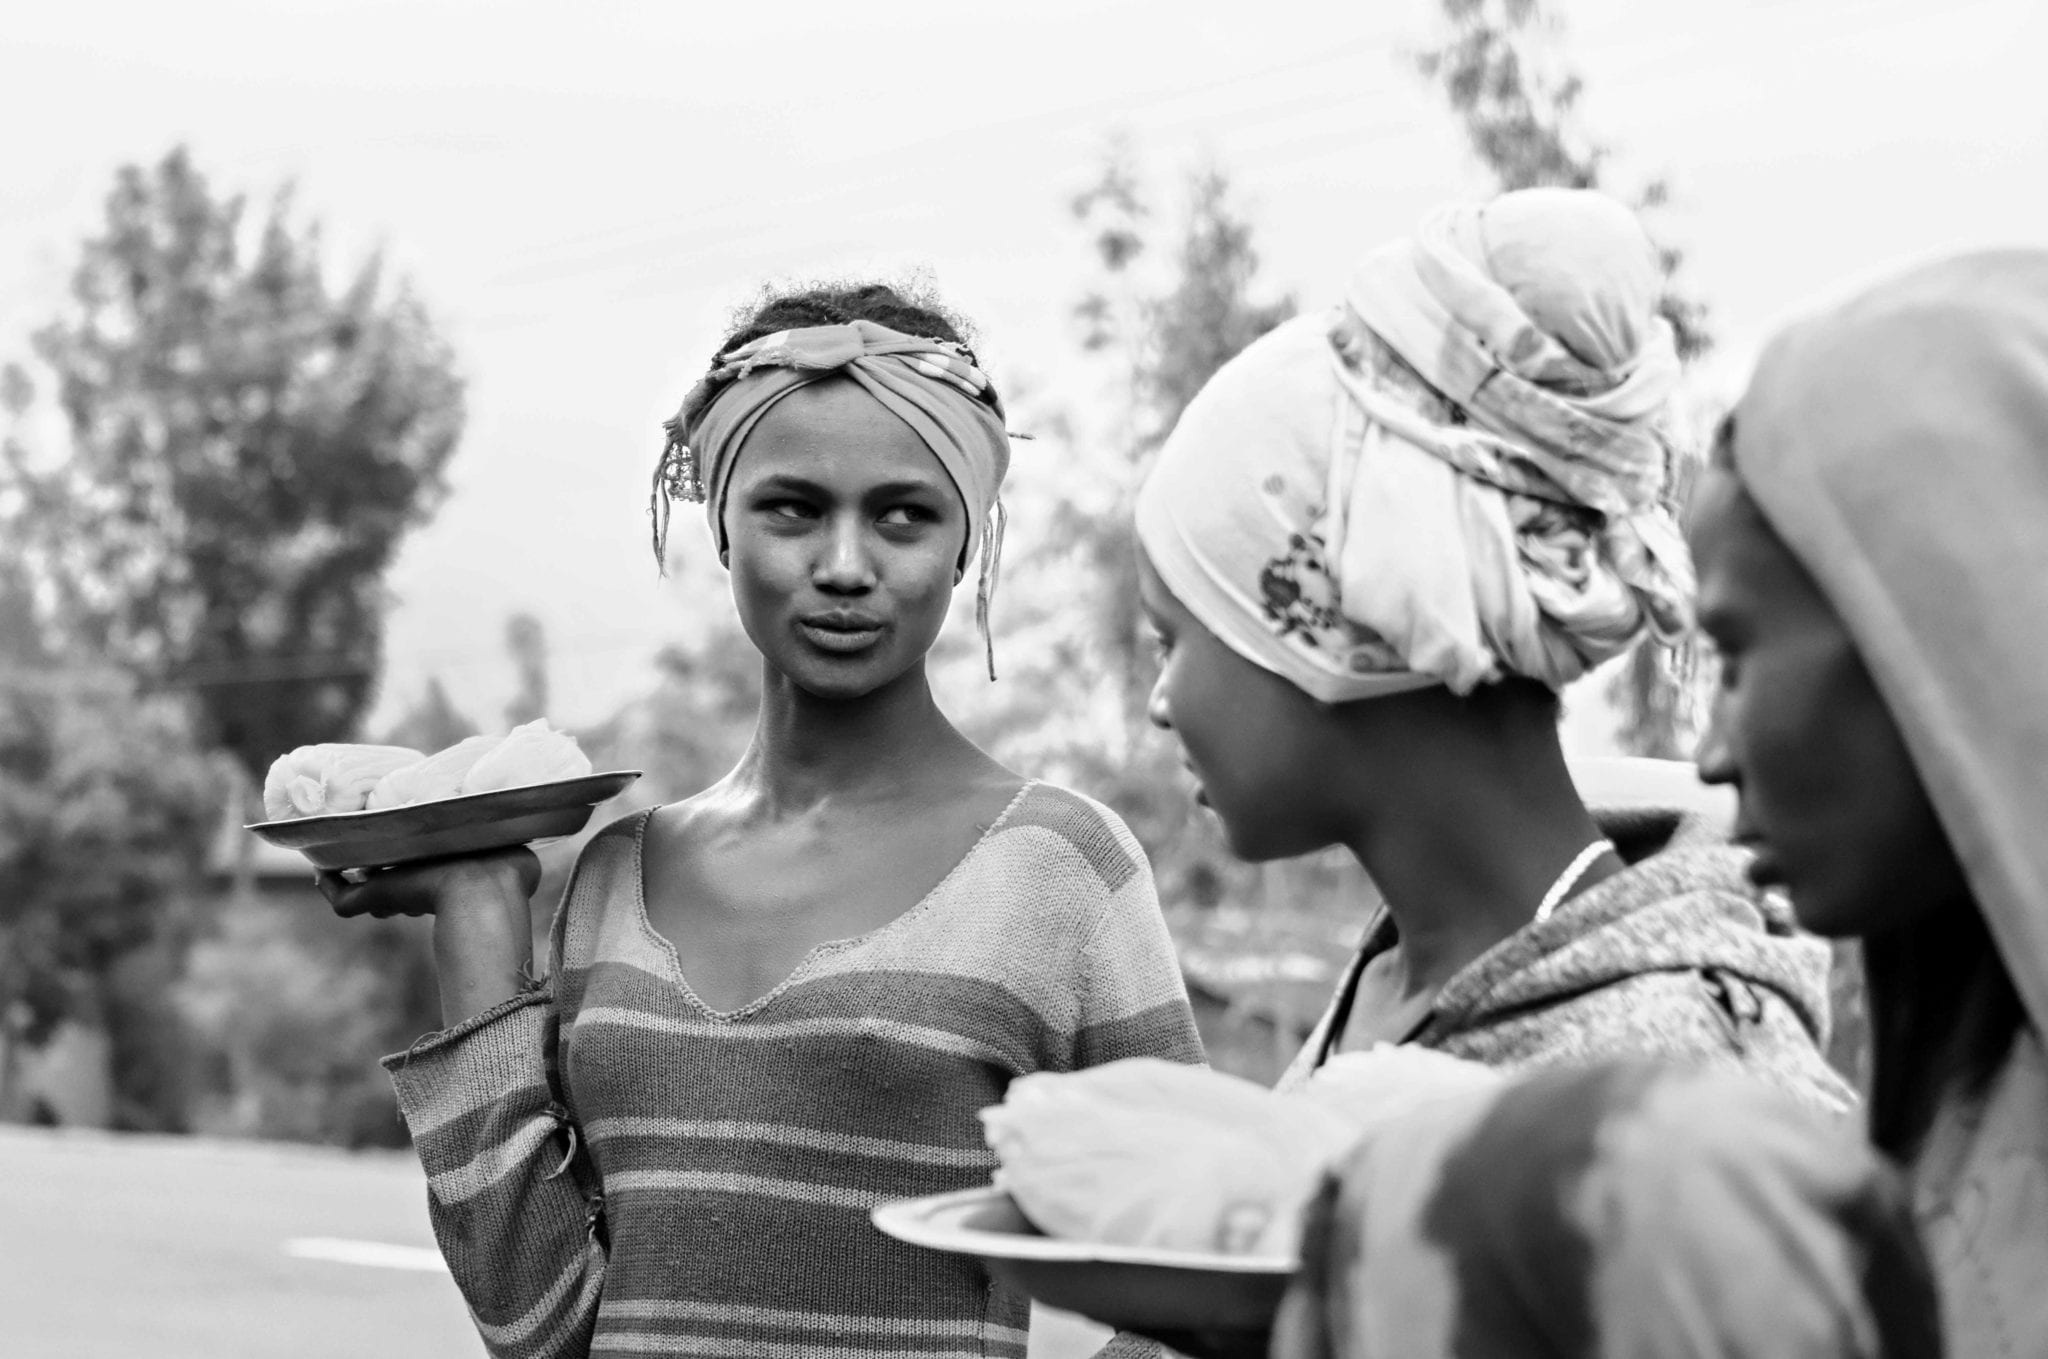 La pandemia sommersa: Covid-19 e disuguaglianze di genere nell’Africa subsahariana